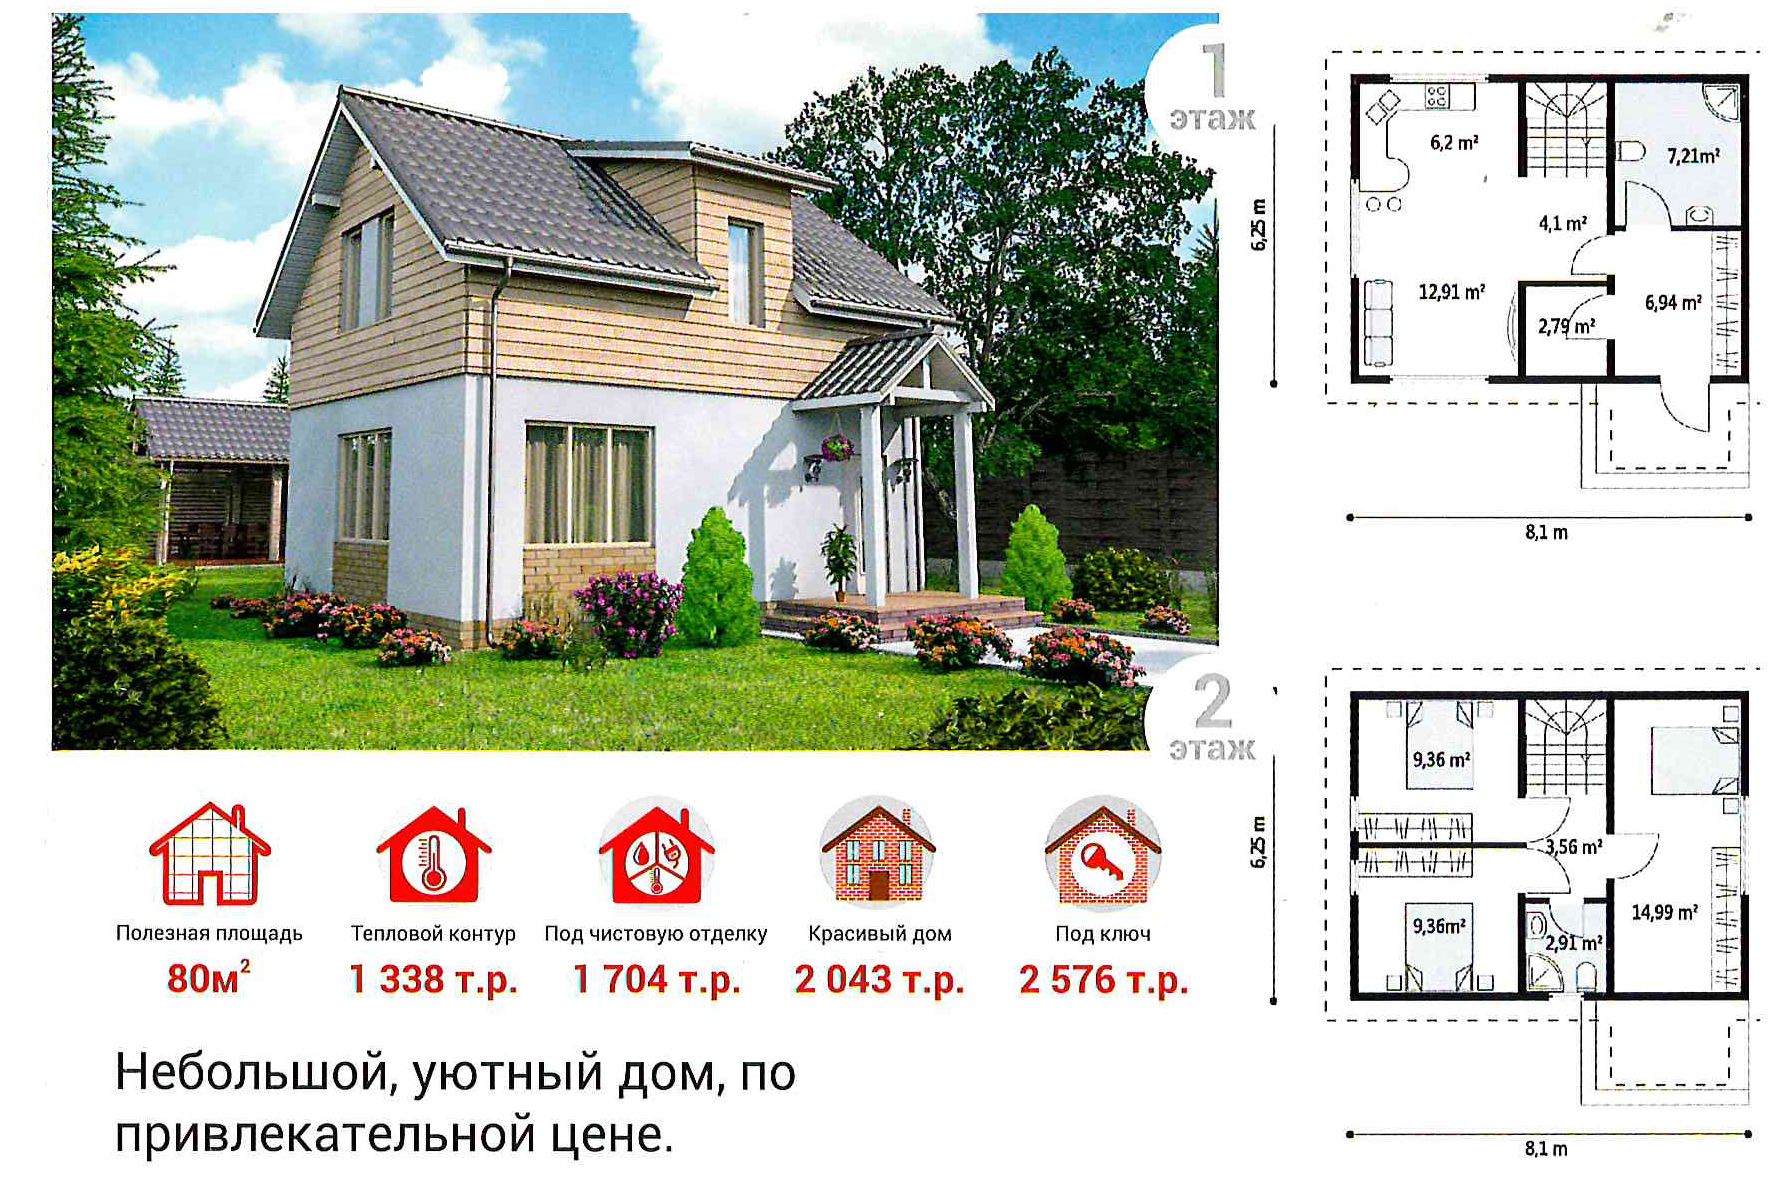 Как построить дом в Новосибирске - бесплатная экскурсия